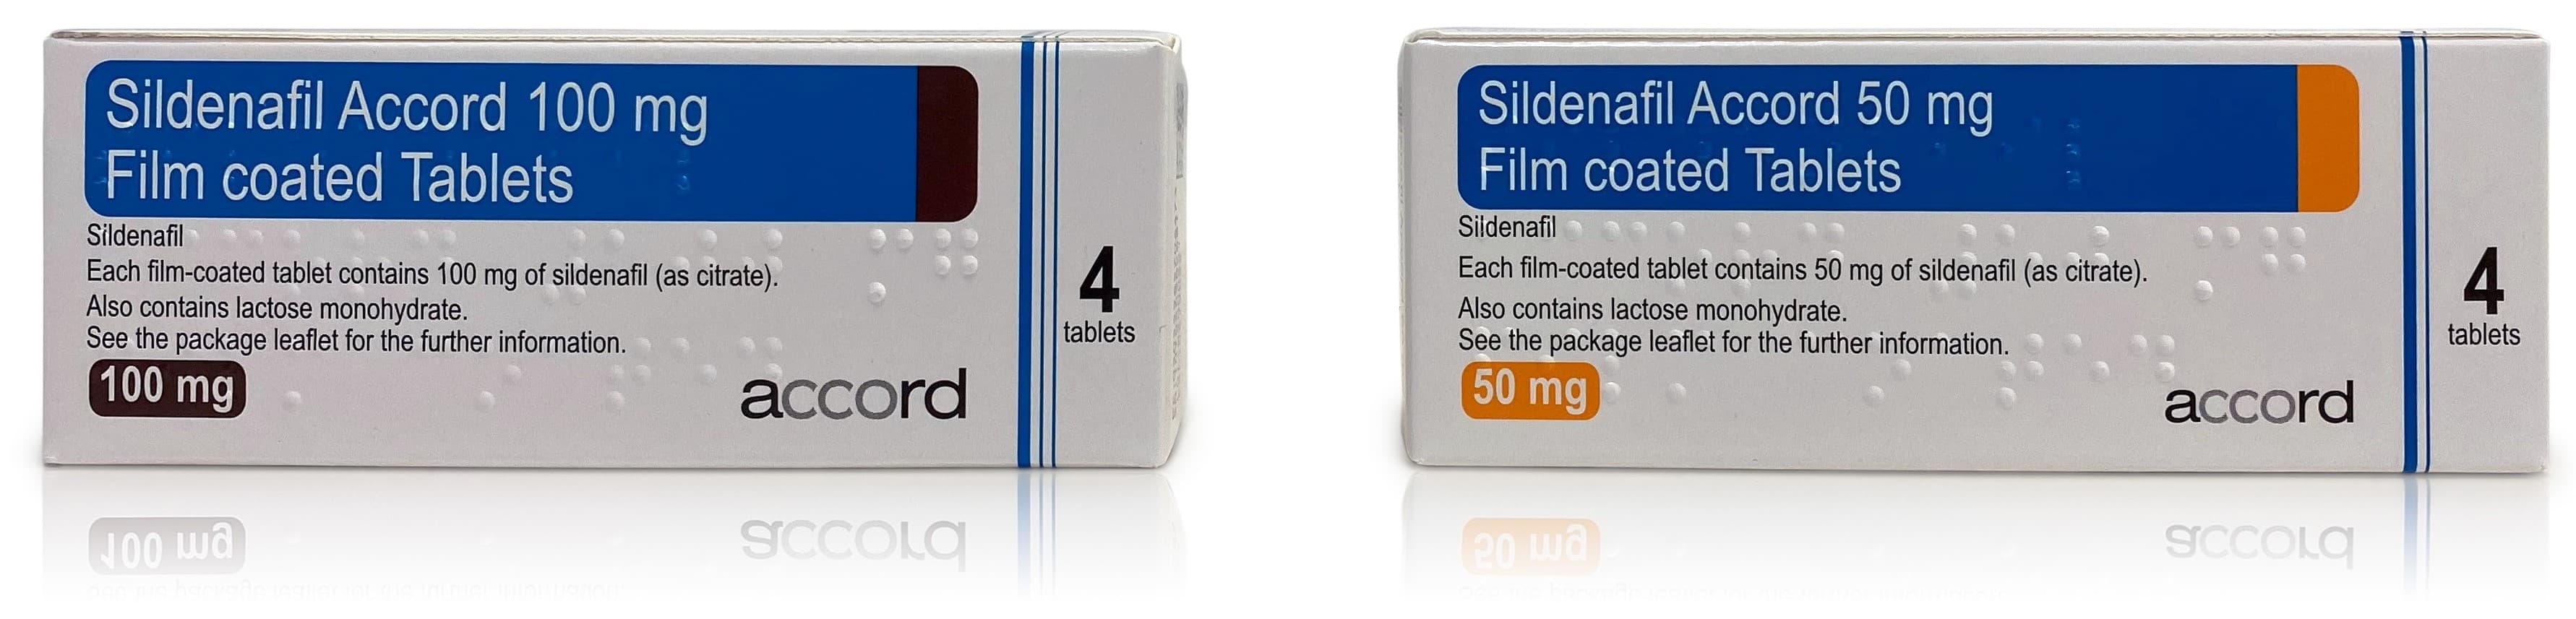 Sildenafil 100mg tablets and sildenafil 50mg tablets